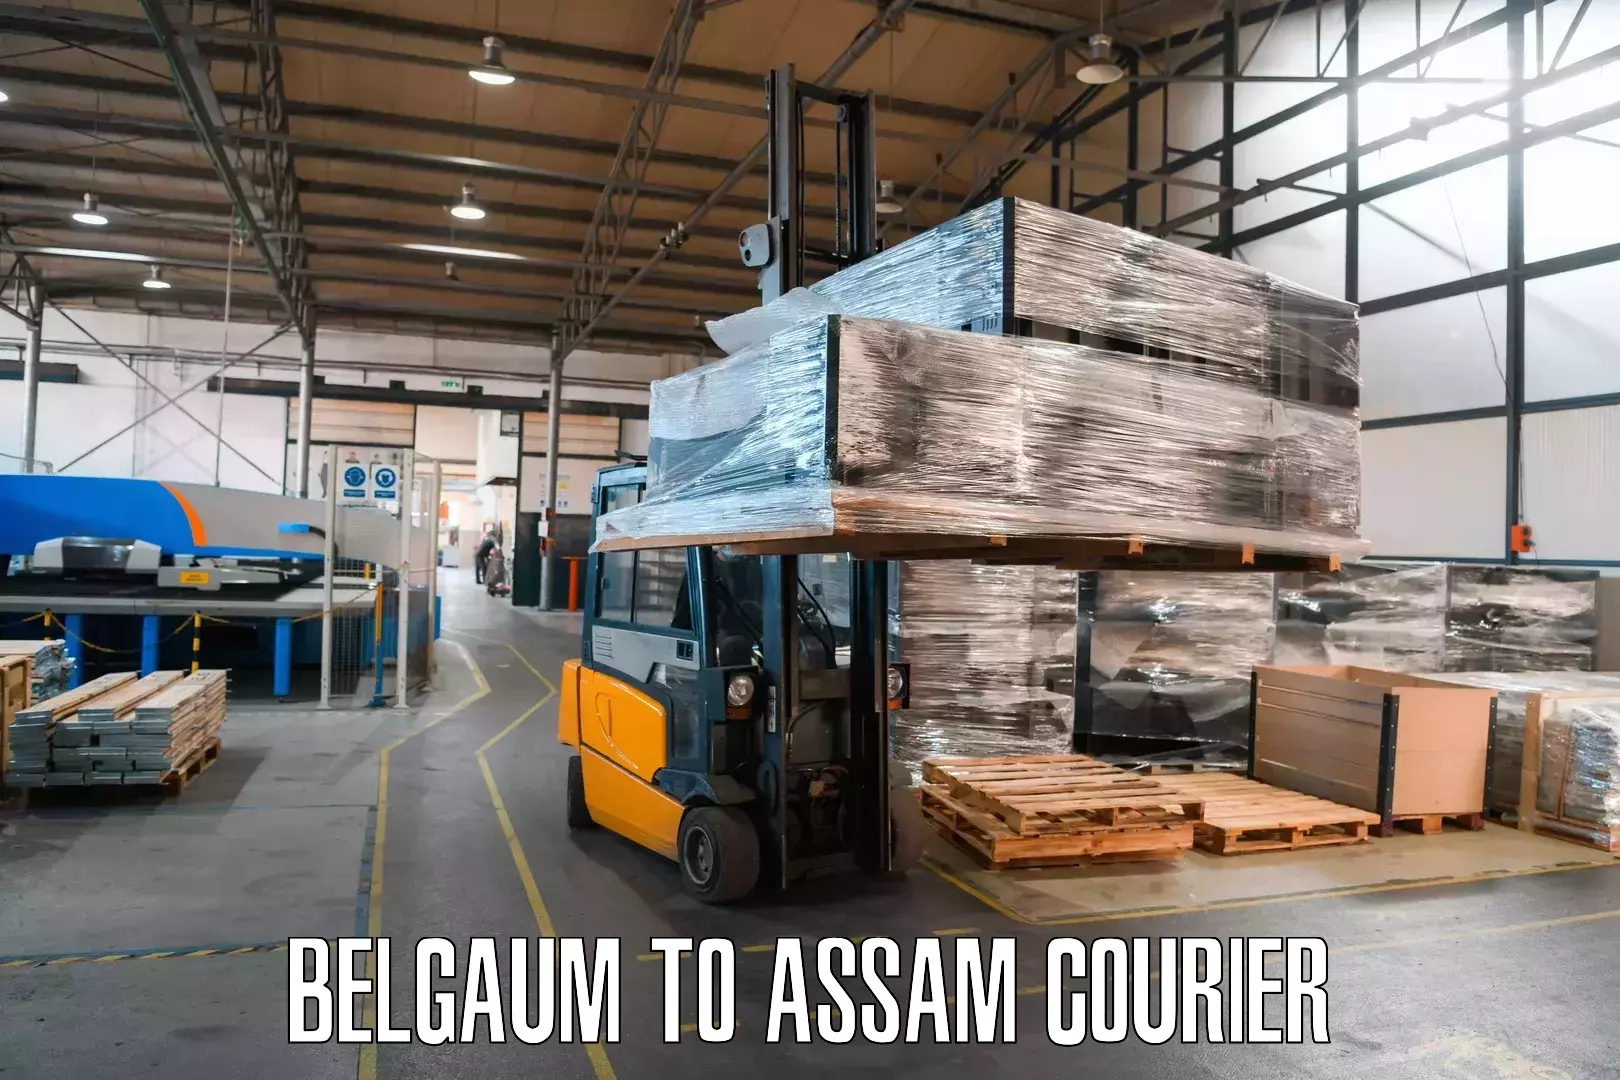 Return courier service Belgaum to Mazbat